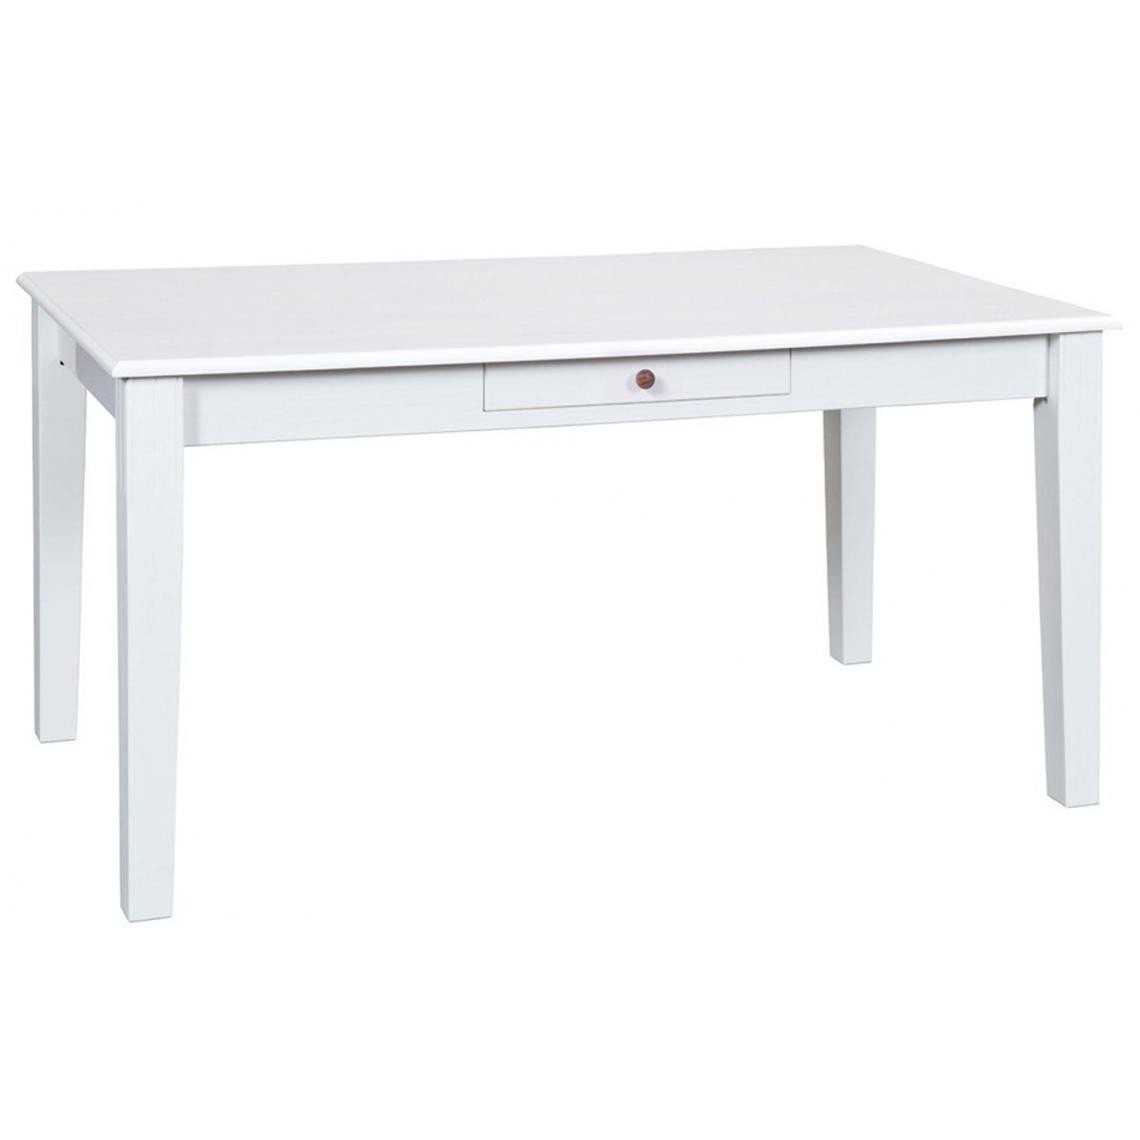 Pegane - Table à manger extensible en pin massif, laqué blanc - Dim : L 160 x P 90 x H 75 cm - Tables à manger